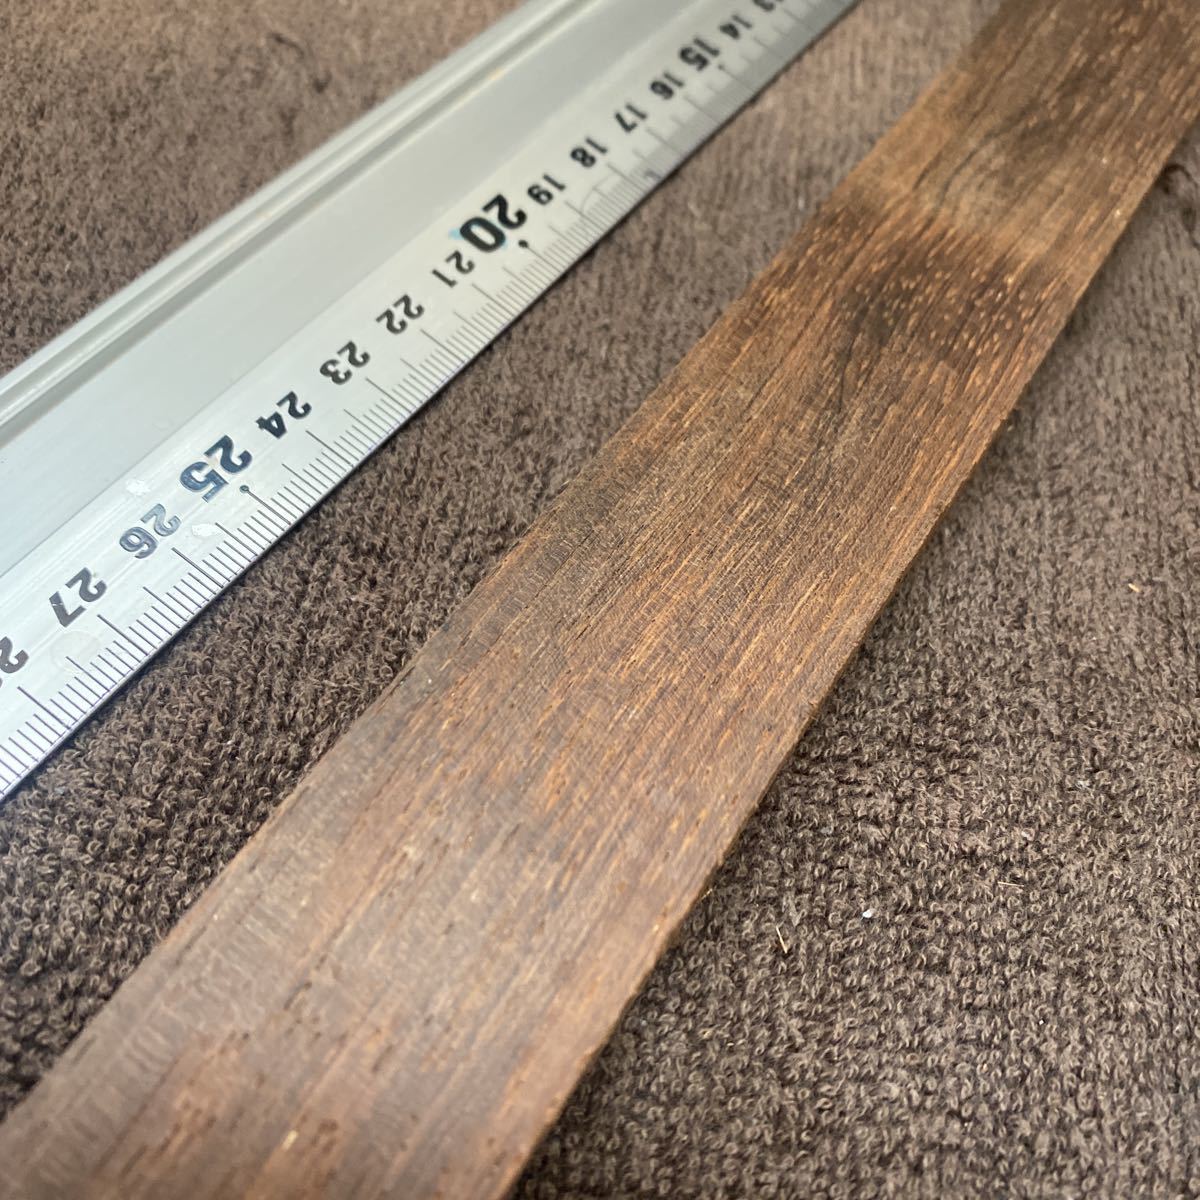 b radio-controller Lien rose wood is ka Ran da good quality material Bridge 40.3cm×3.2cm thickness 13mm guitar material pen block 